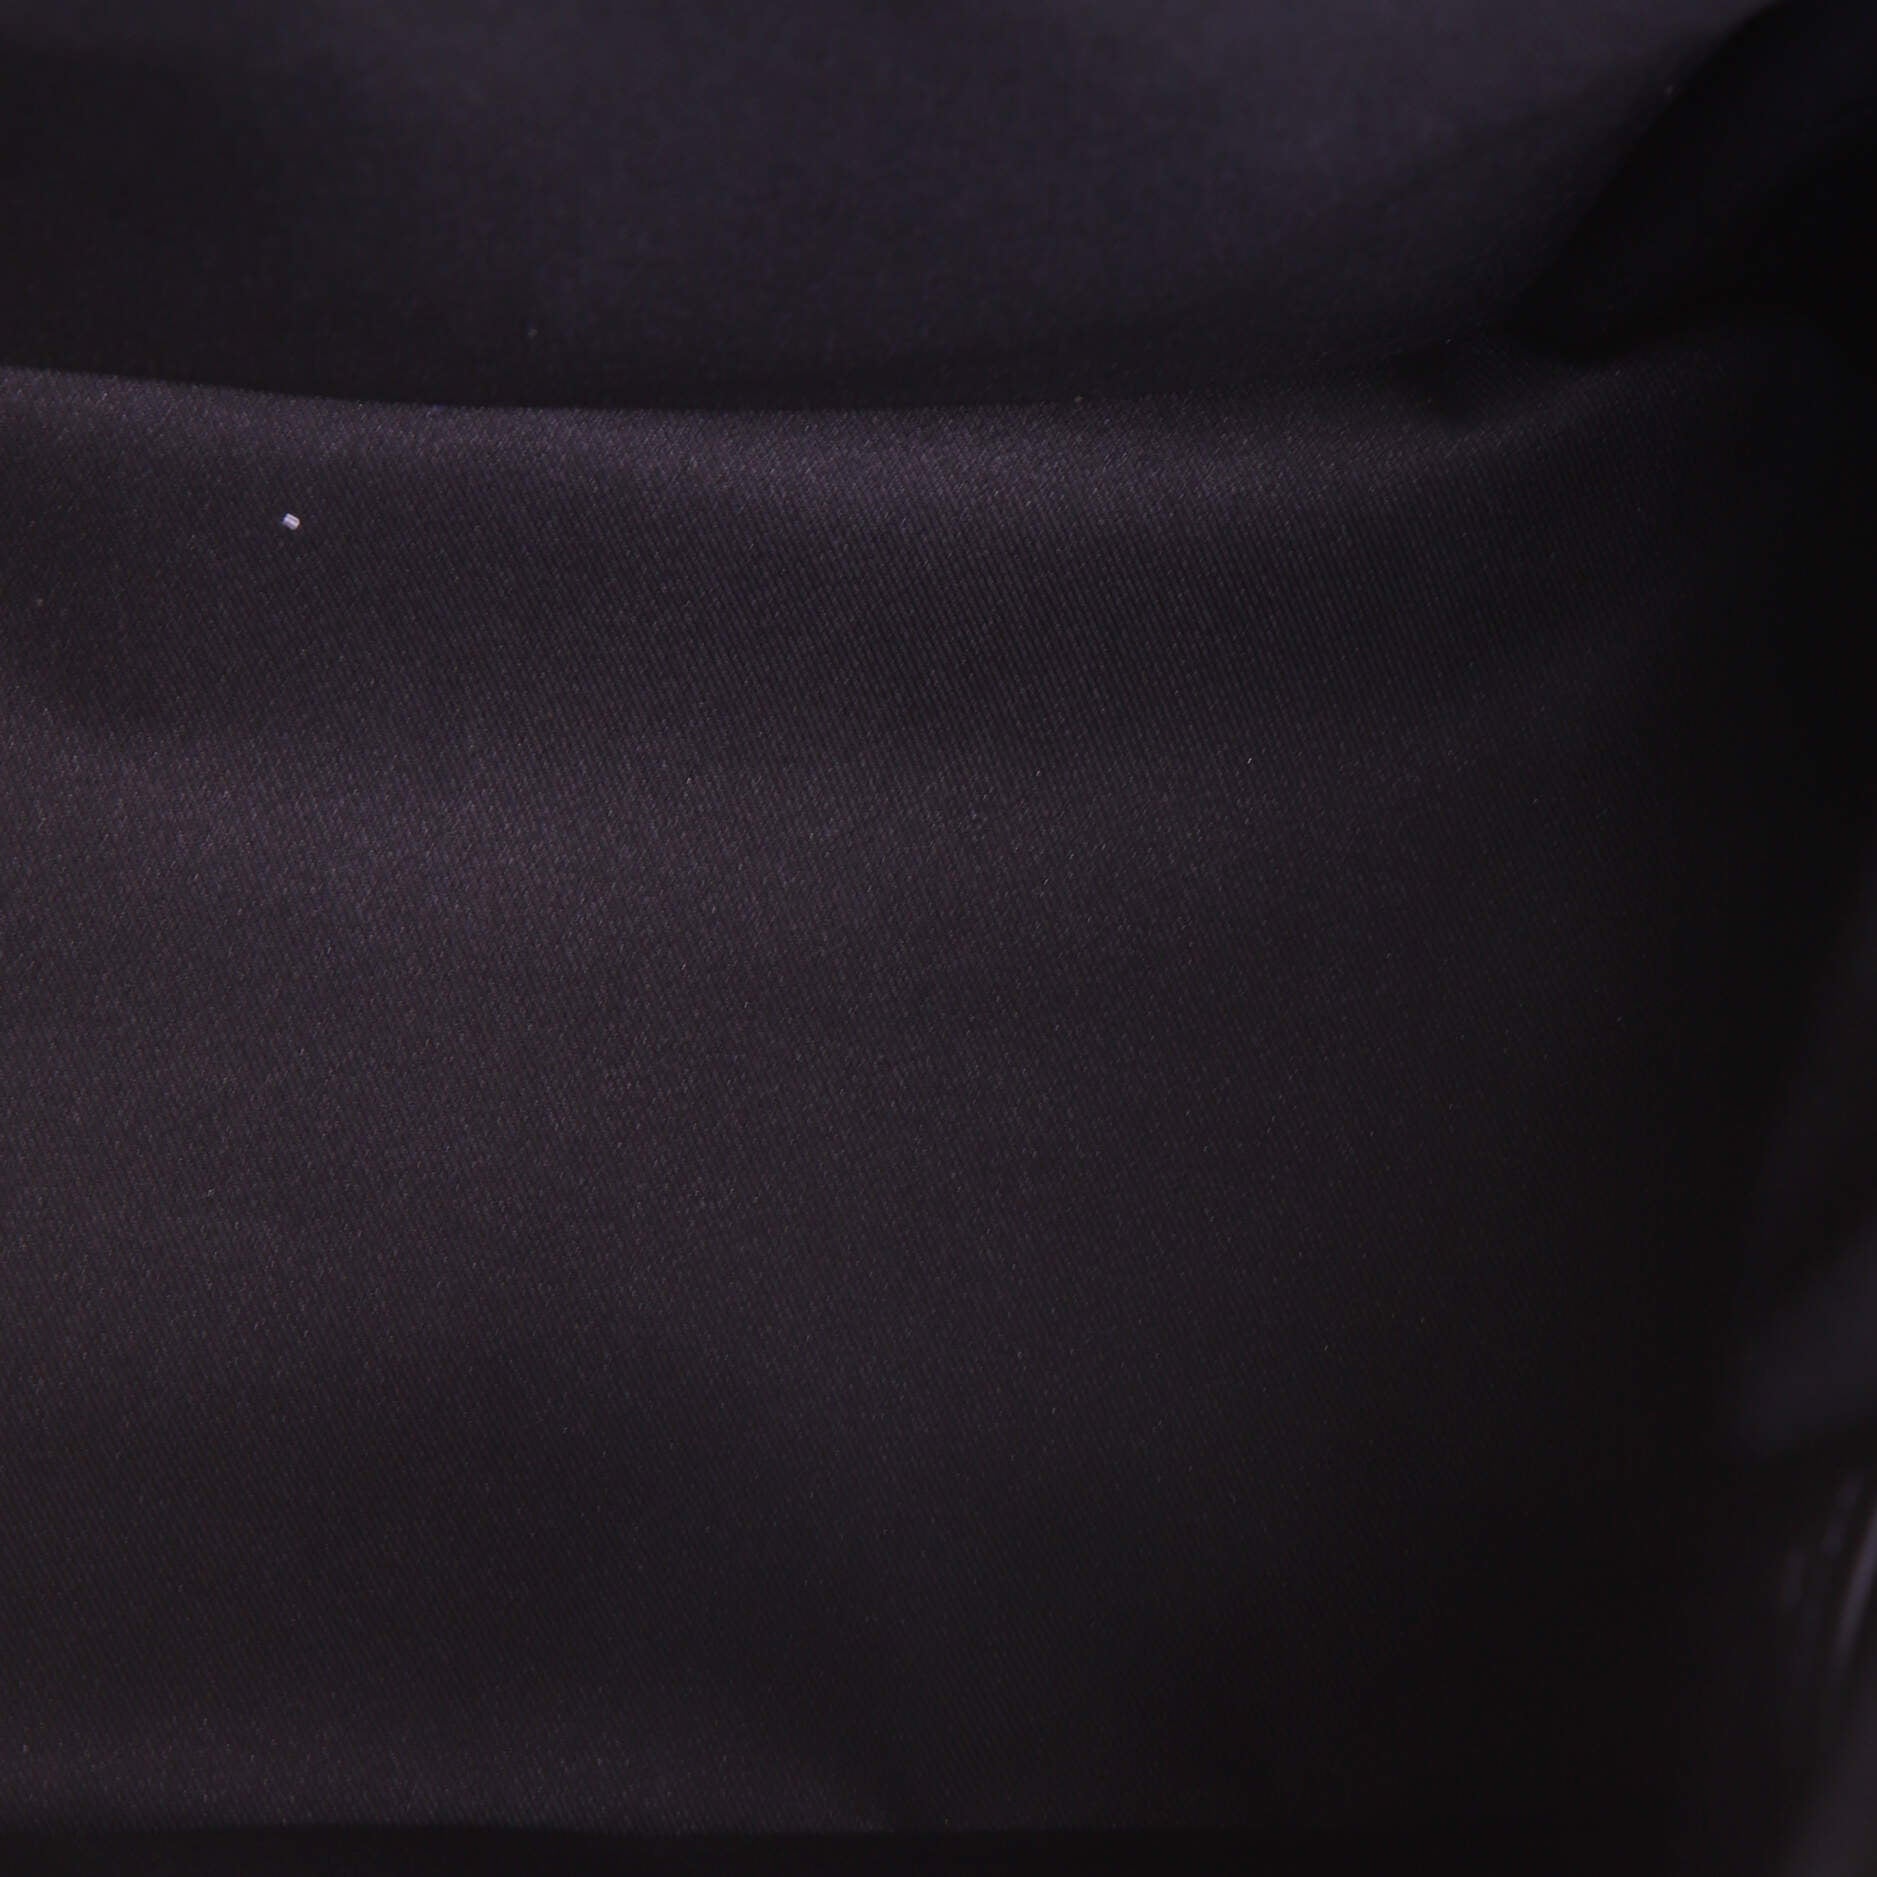 Louis Vuitton Alpha Backpack Monogram Galaxy Black Multicolor